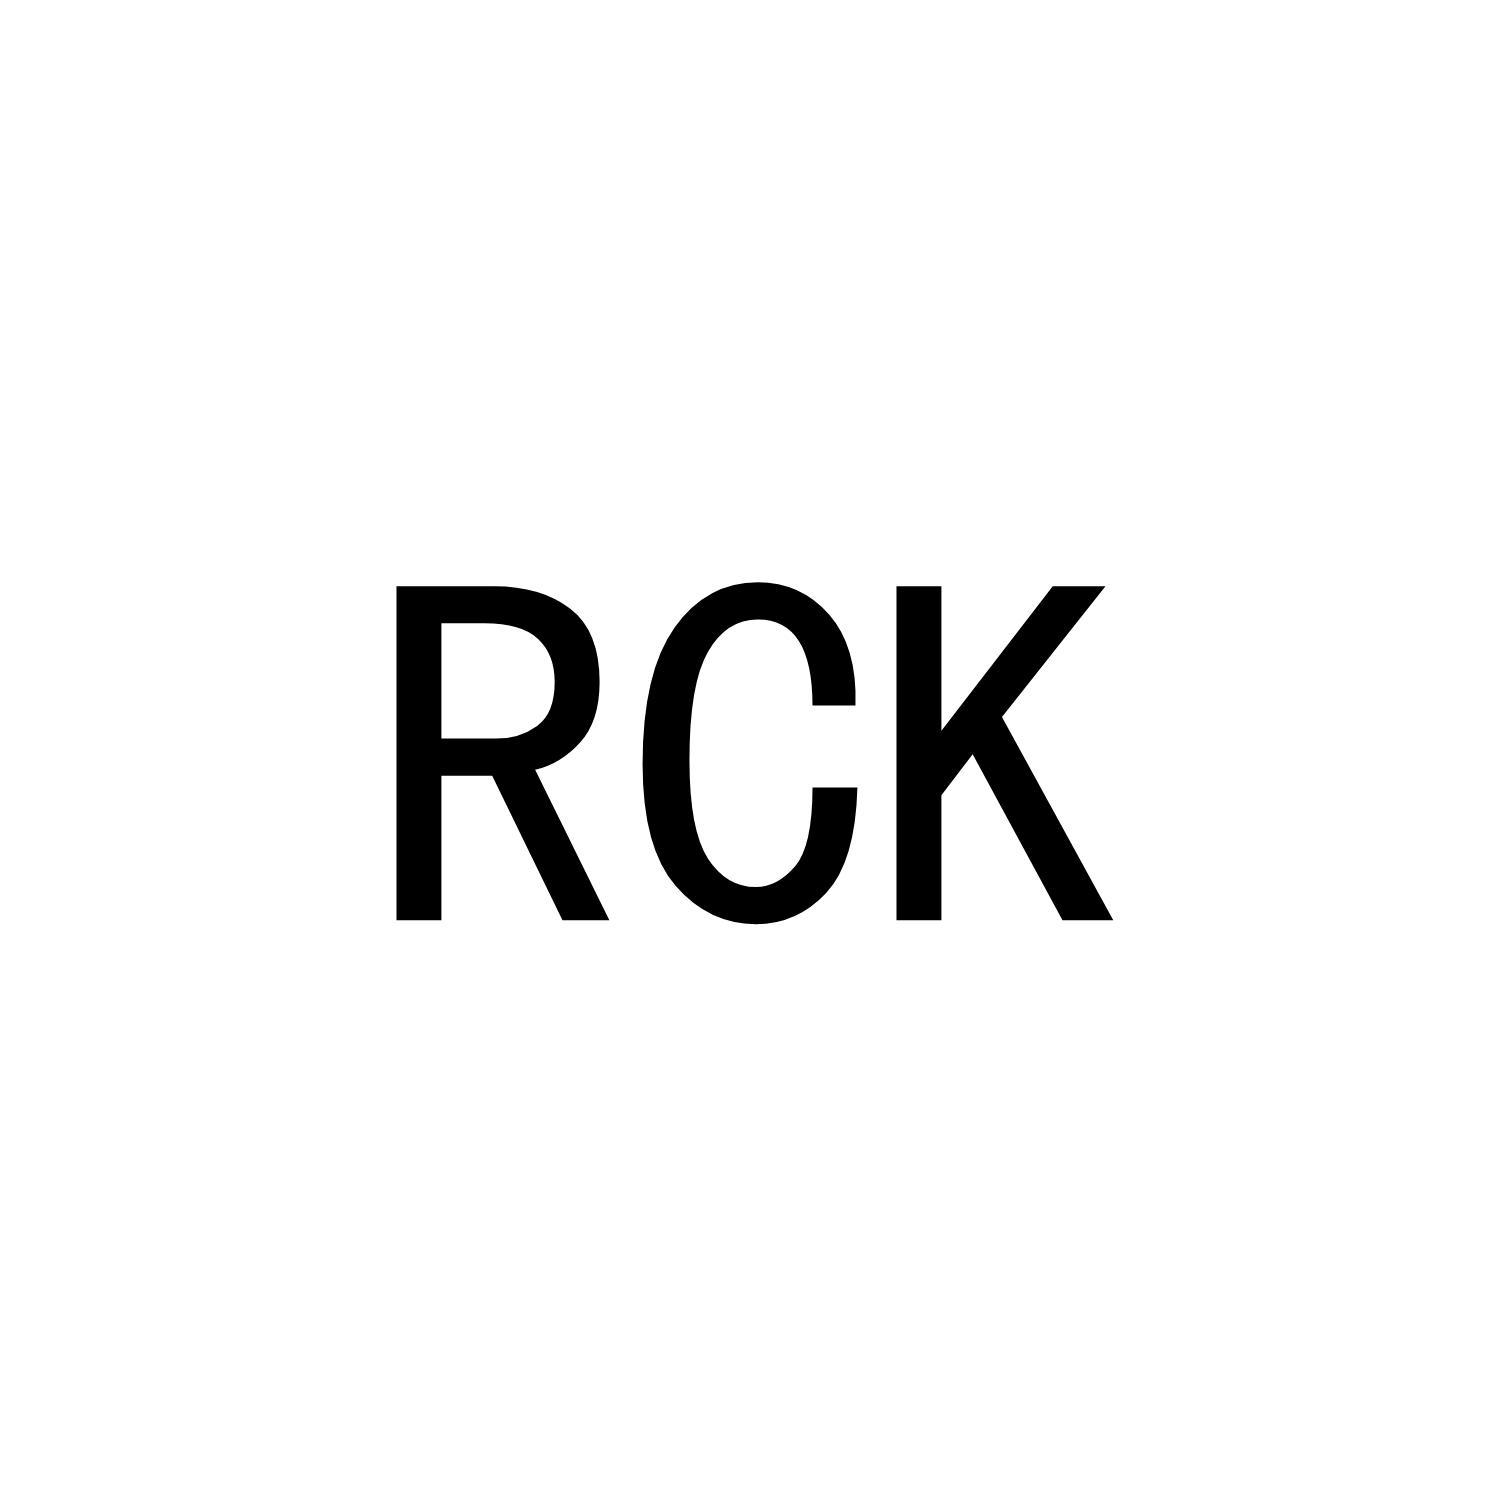 RCK